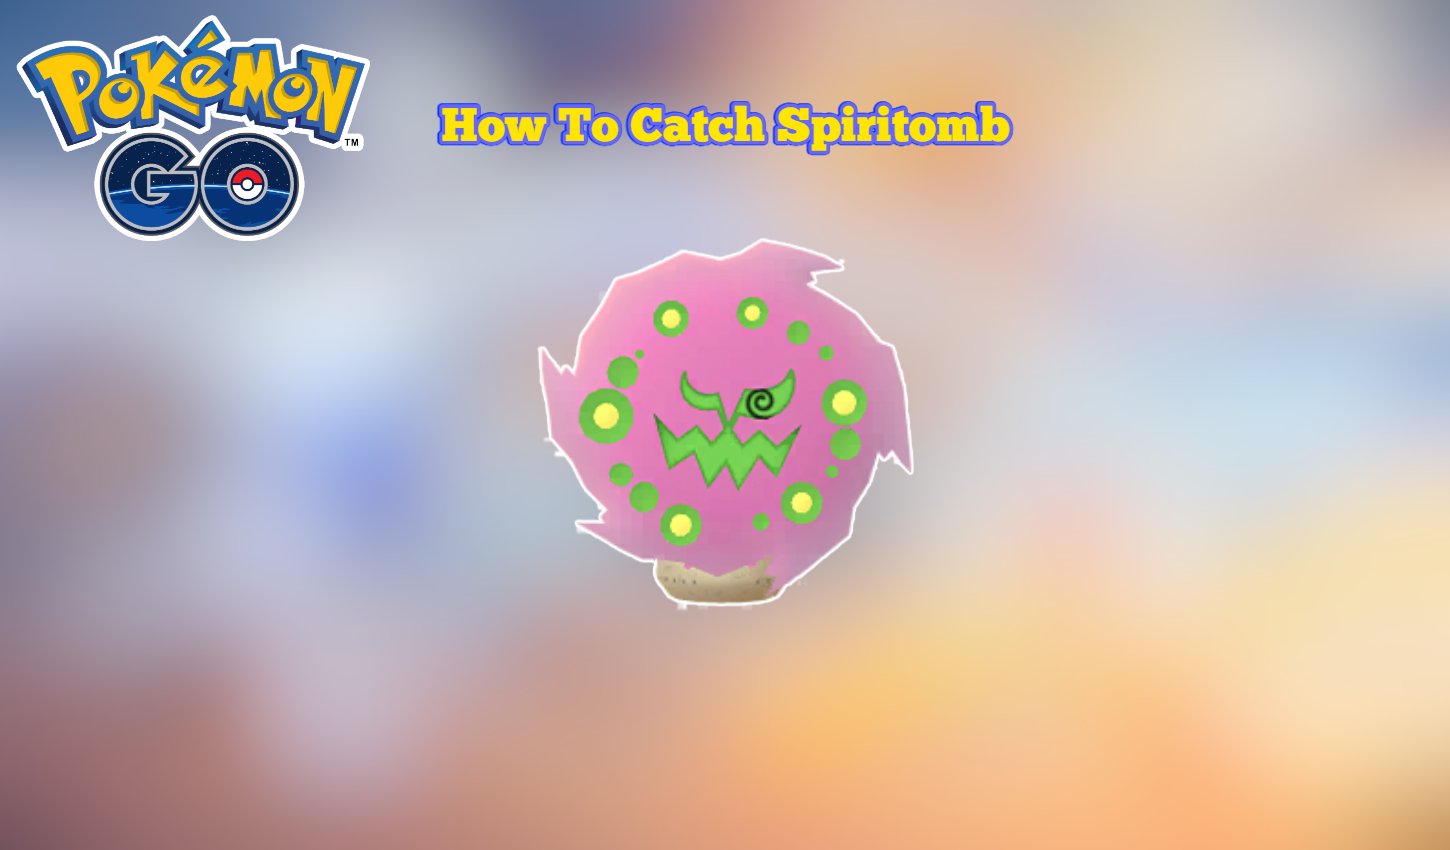 Pokemon Go: How To Catch Spiritomb